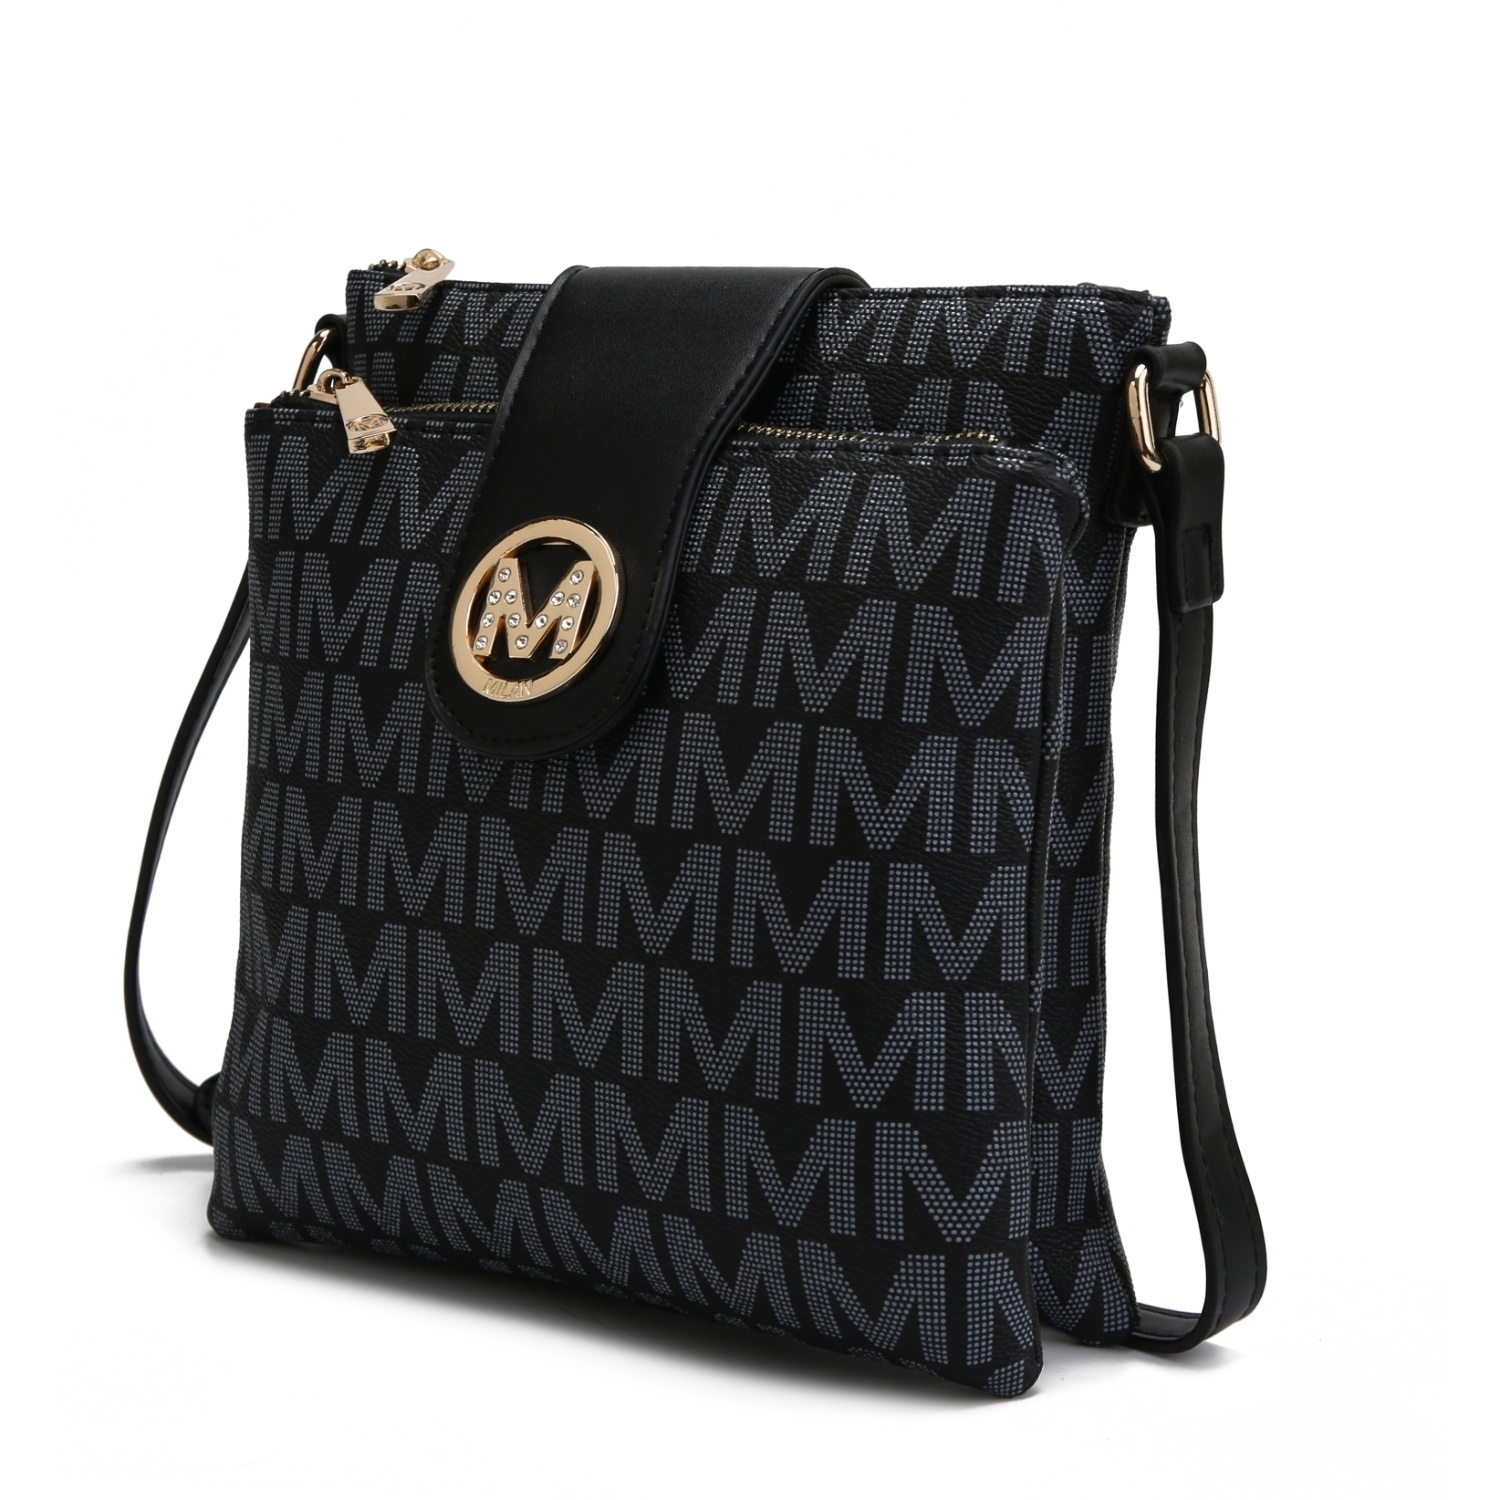 MKF Collection Wrigley M Signature Crossbody Handbag By Mia K. - Navy